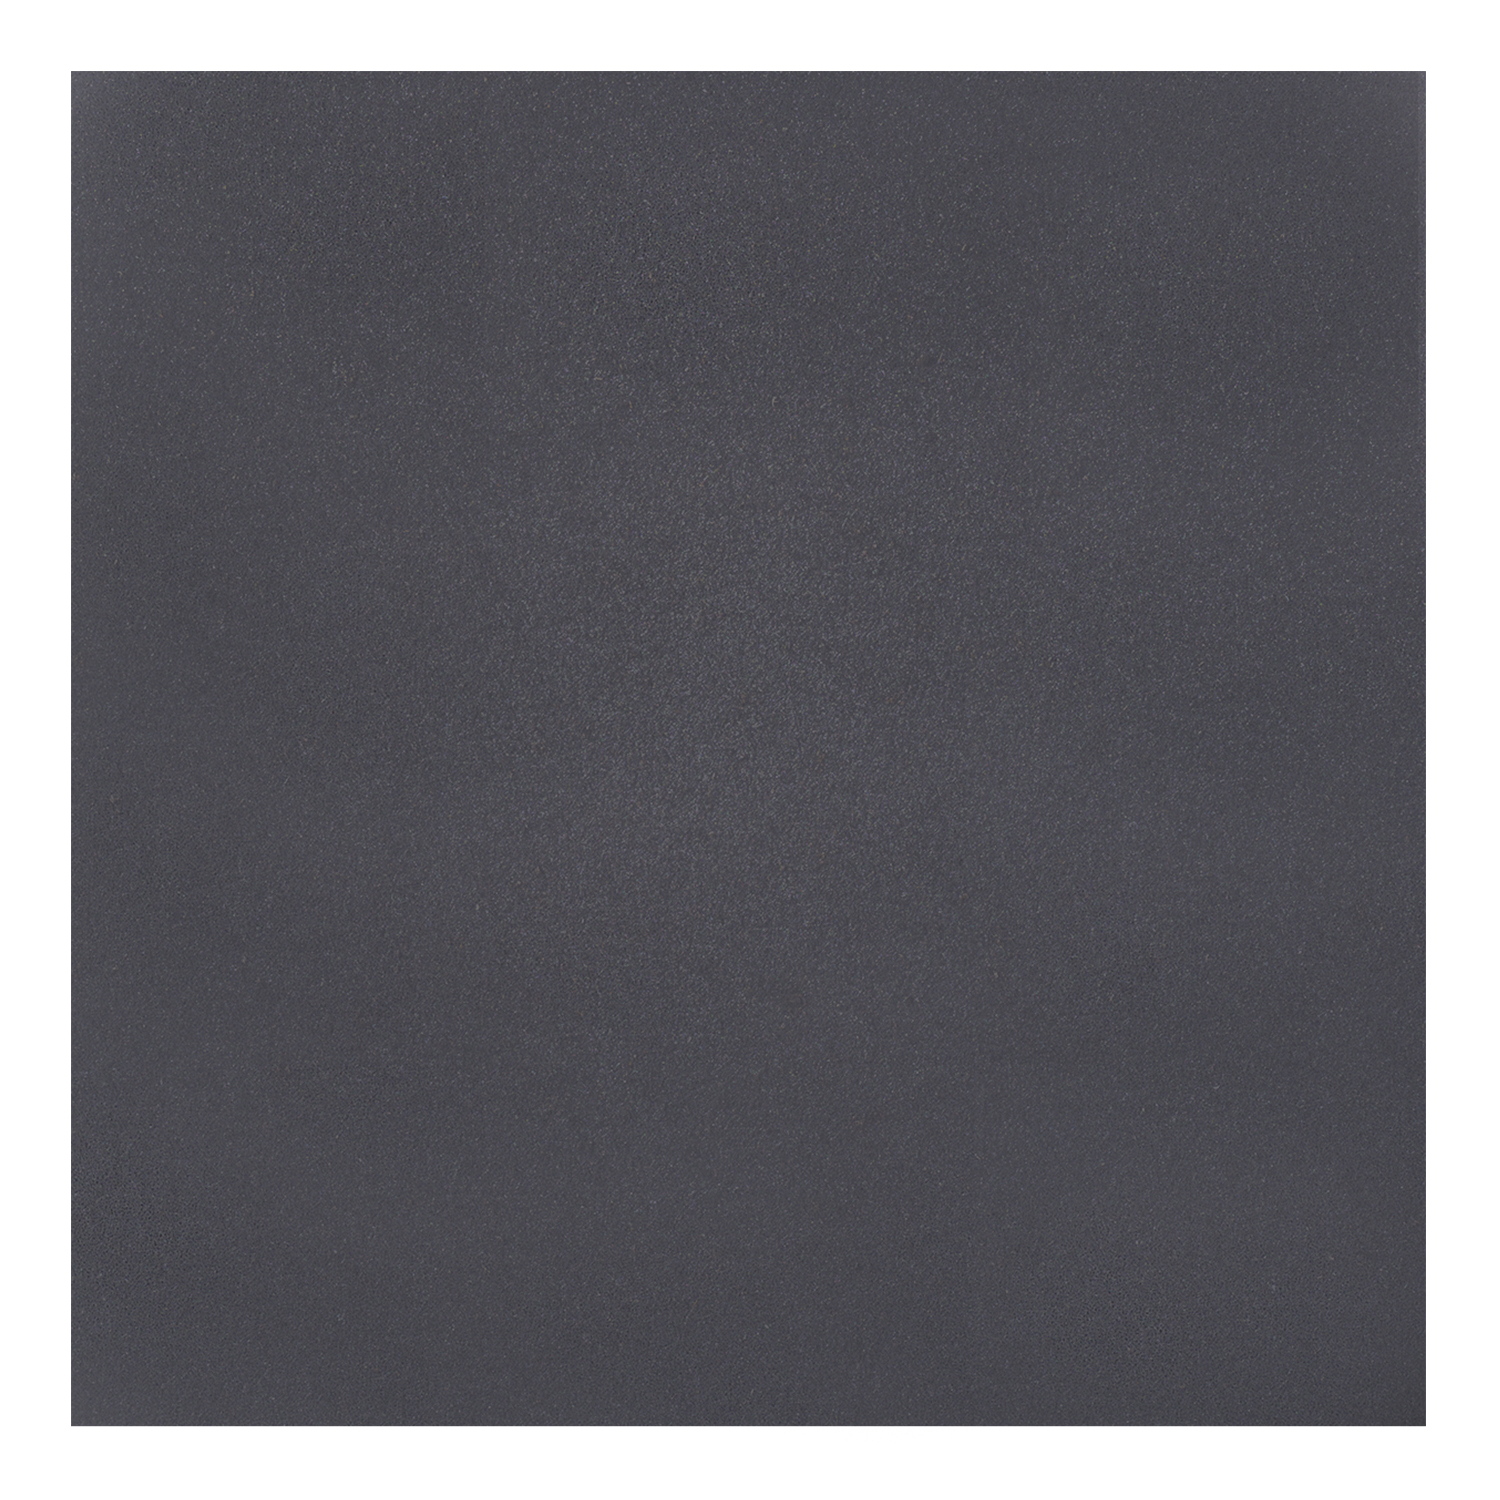 BRITISH GYPSUM BLACK 600 x 600mm Square Edge Ceiling Tiles (Box Qty: 10)